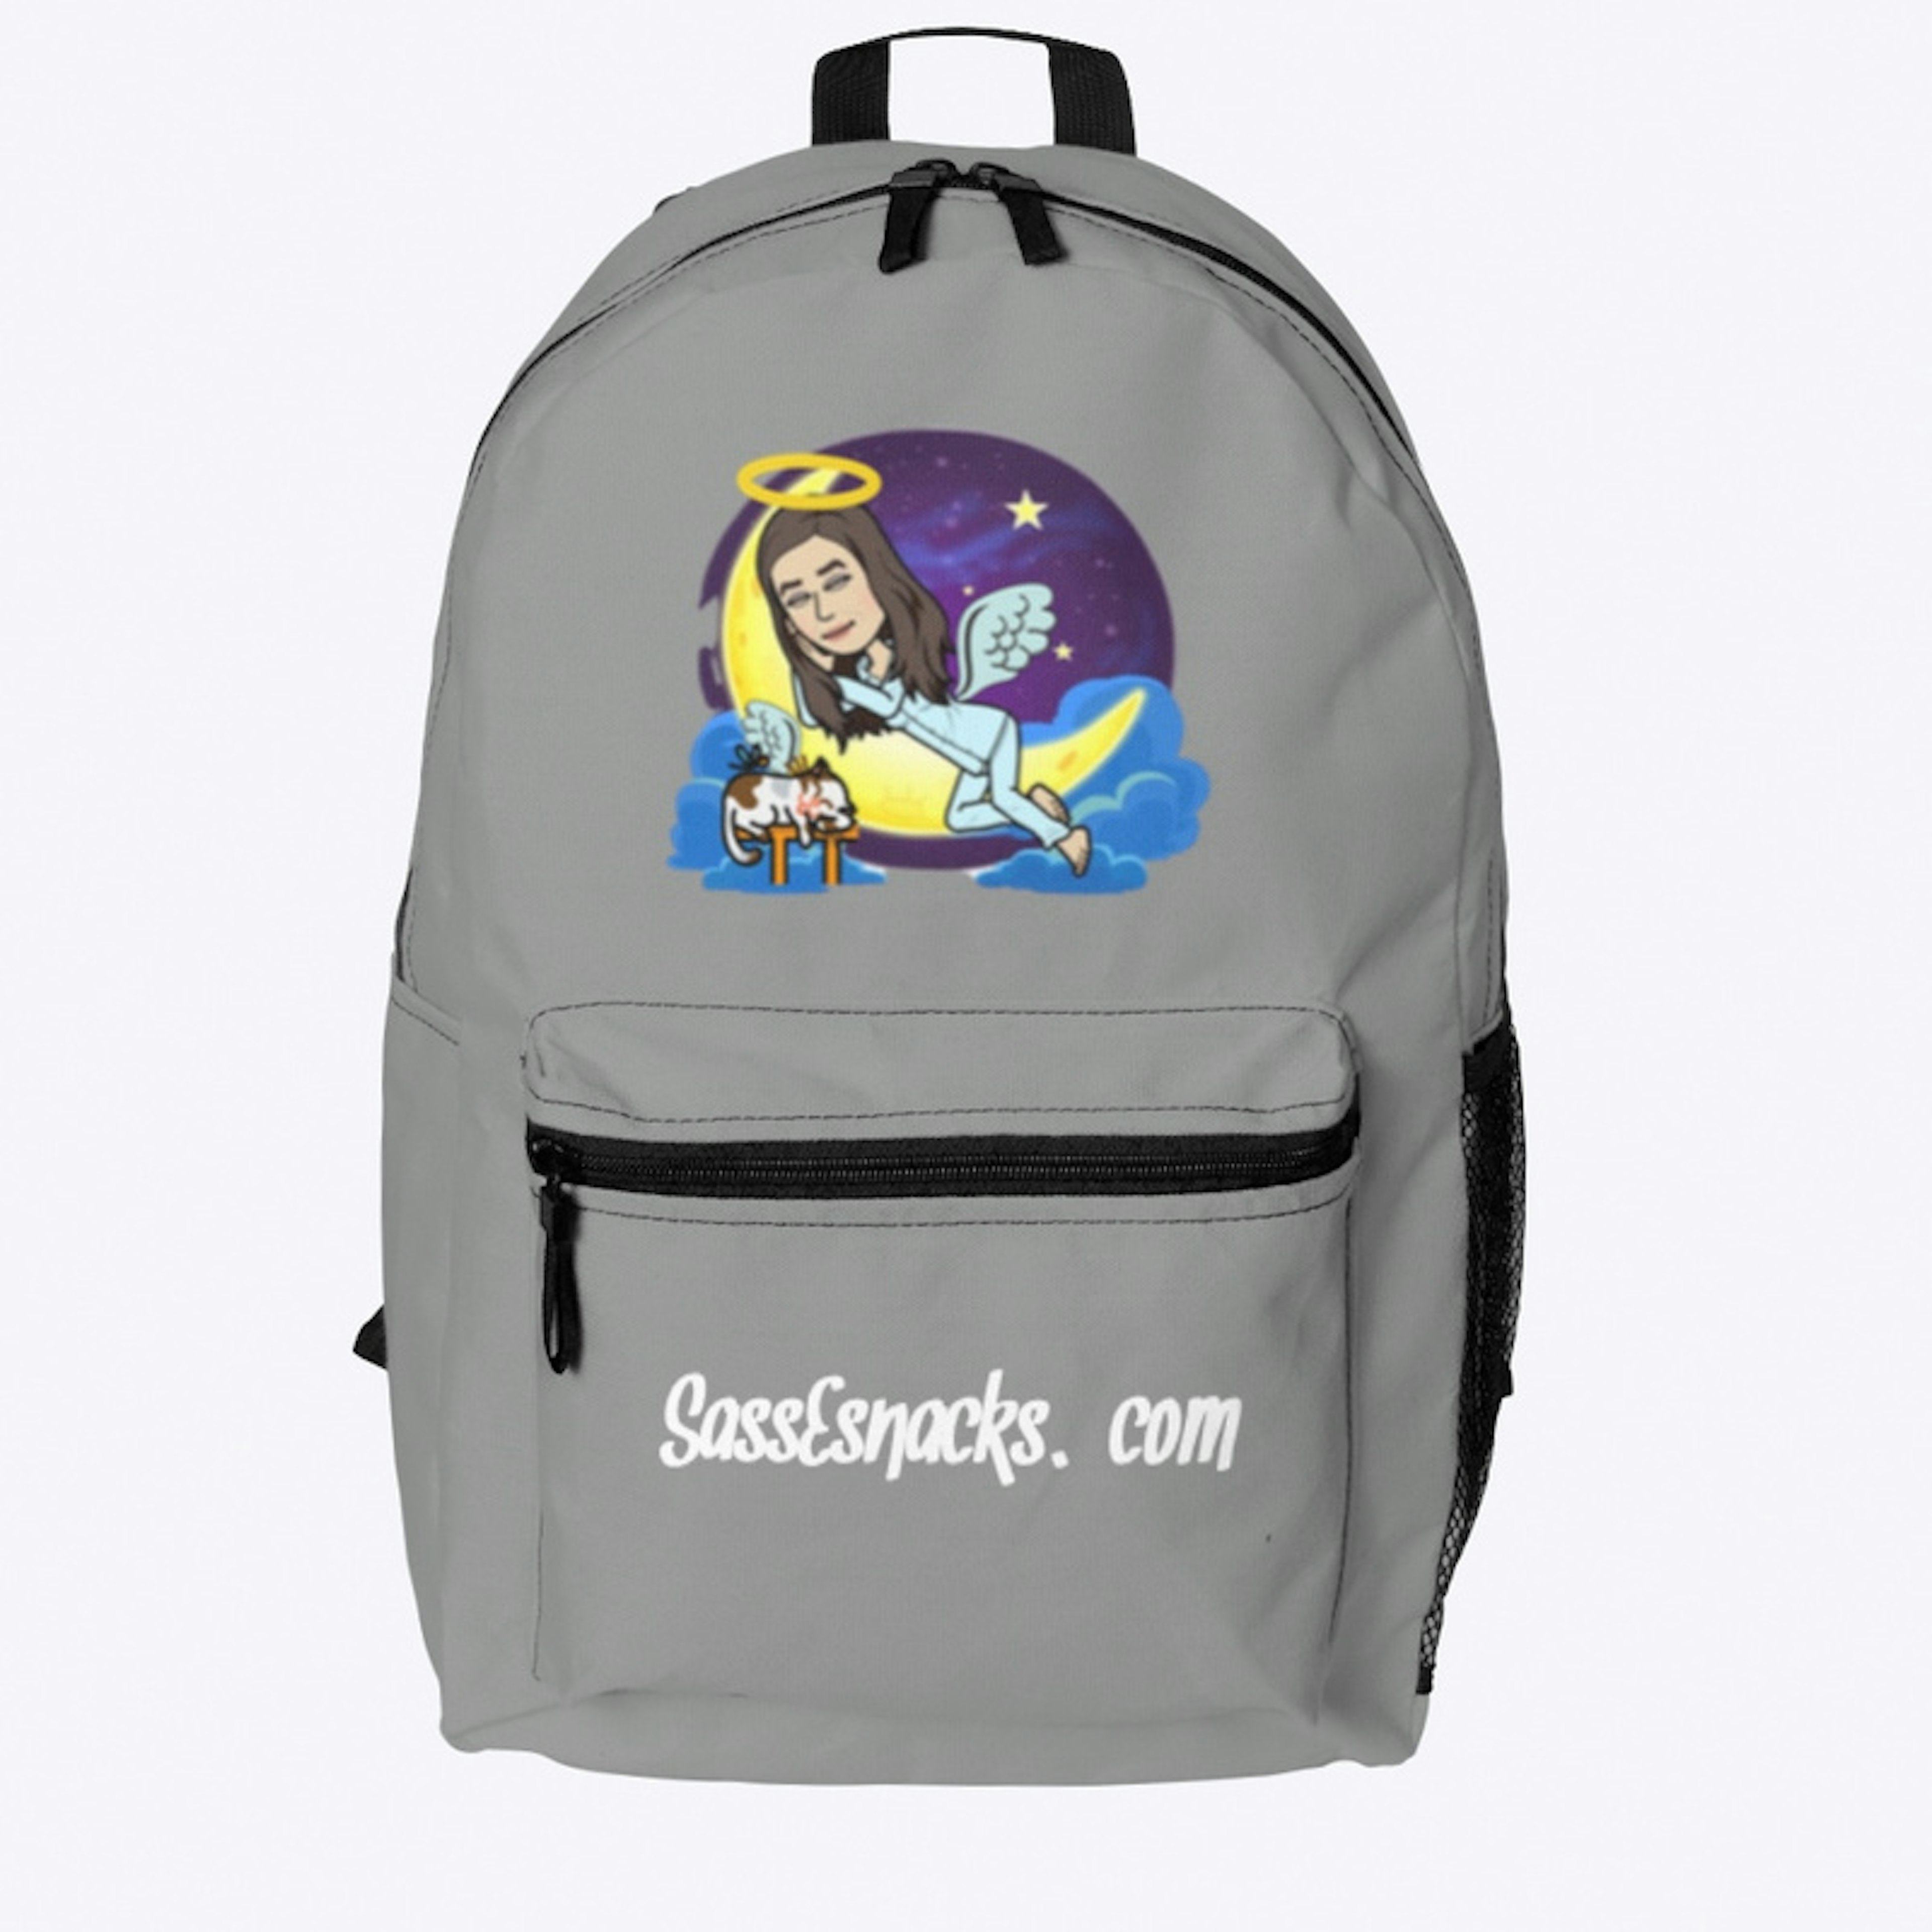 SassEsnacks.com Backpack